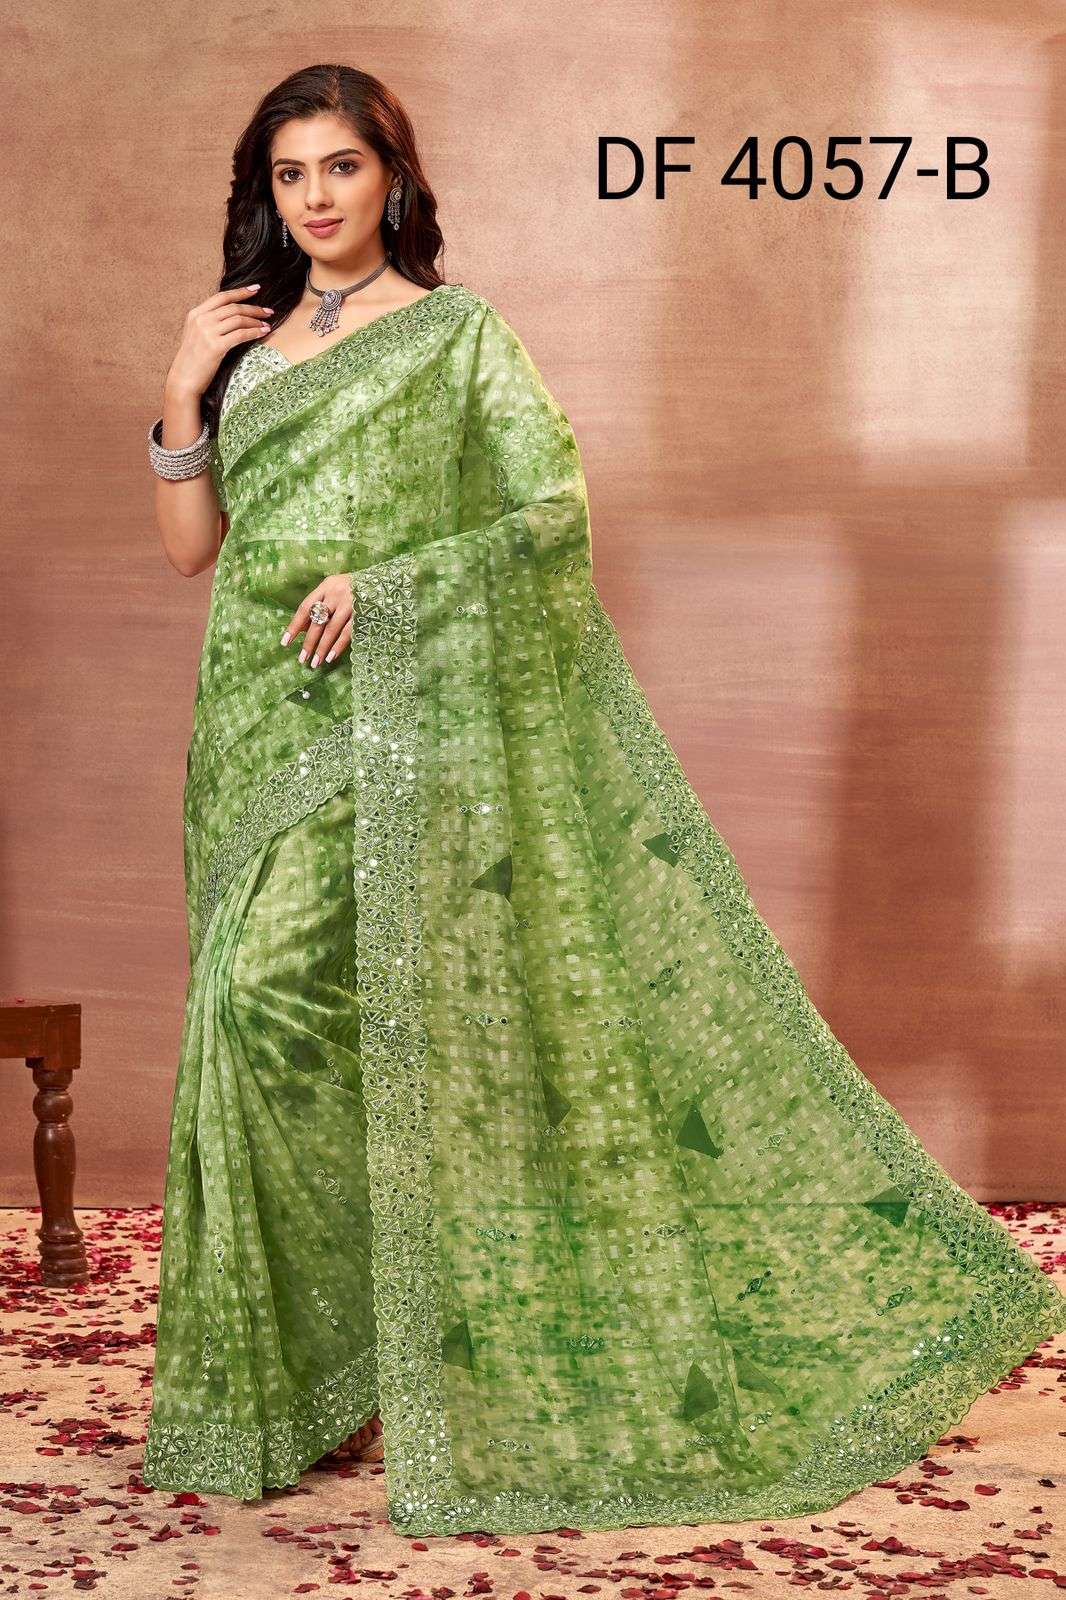 divya df 4057 mirror vol 1 organza printed party wear saree with designer blouse